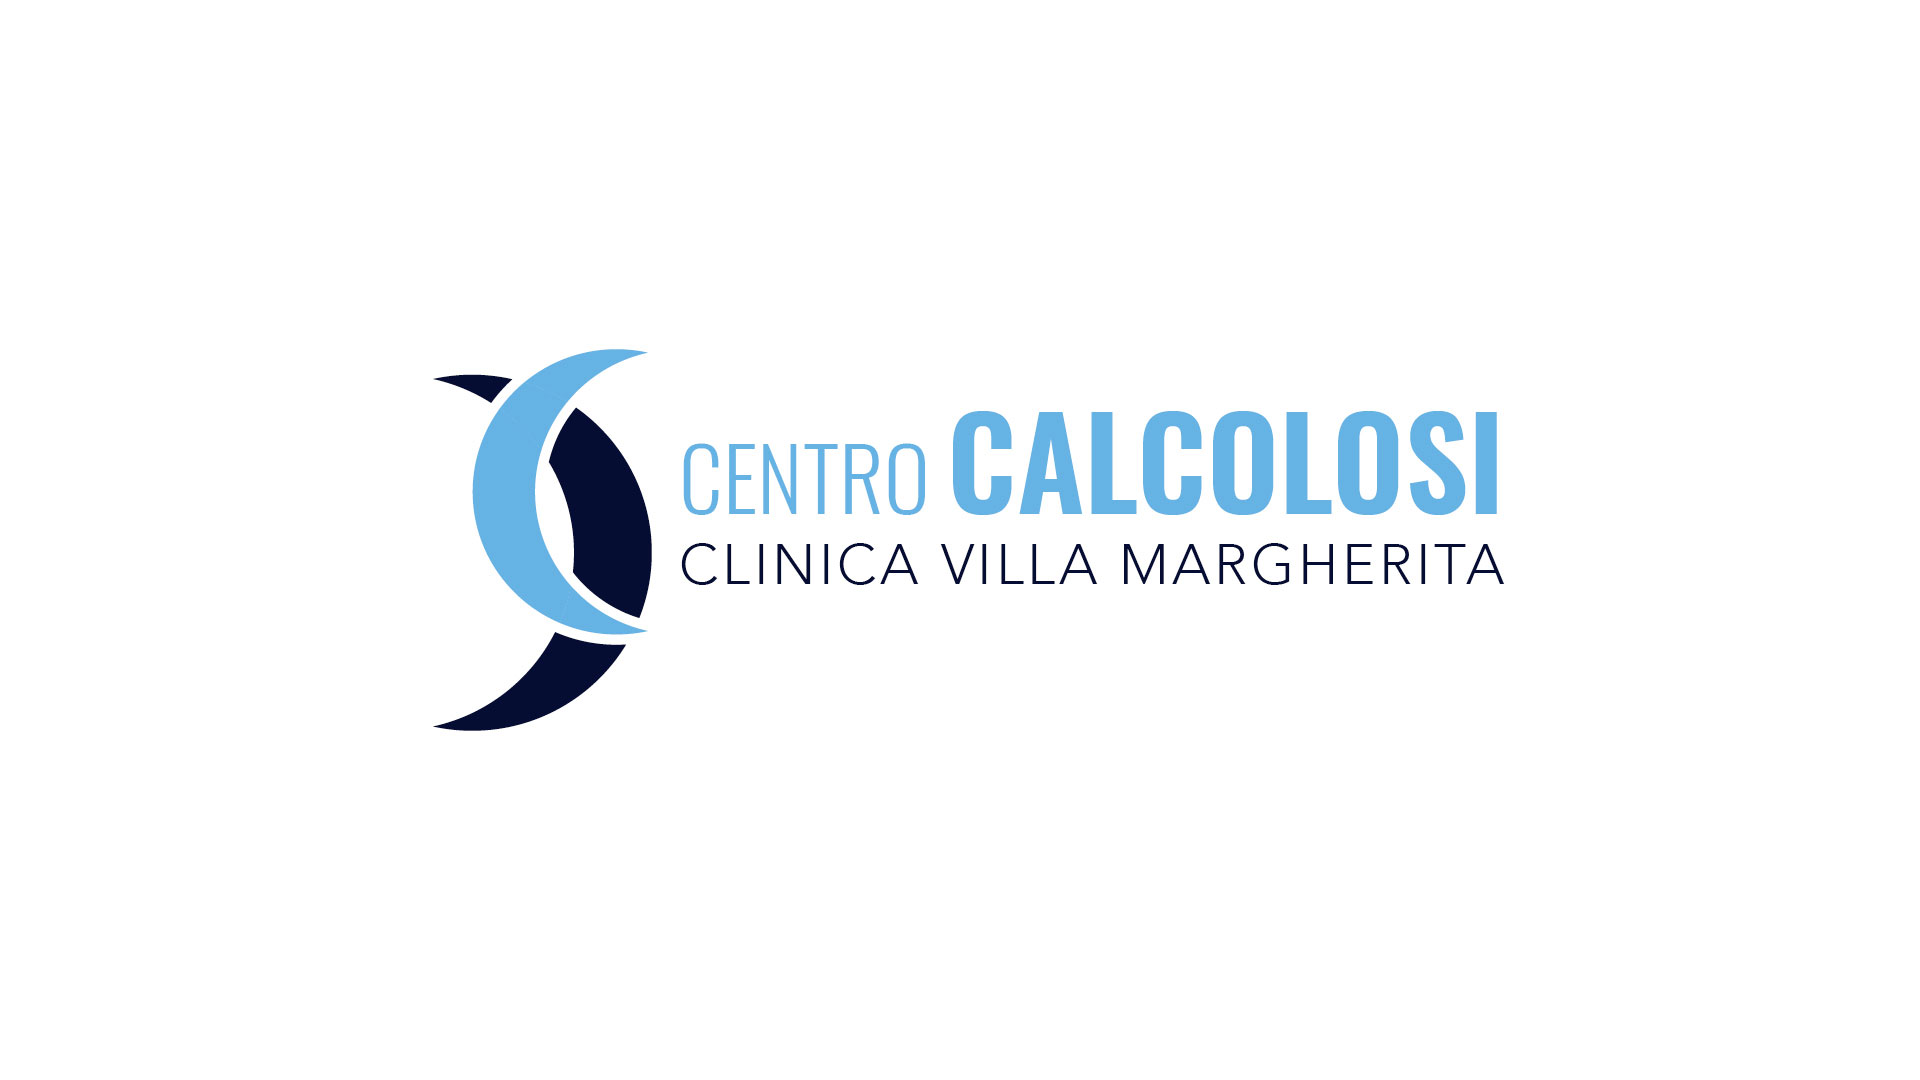 Centro Calcolosi di Clinica Villa Margherita